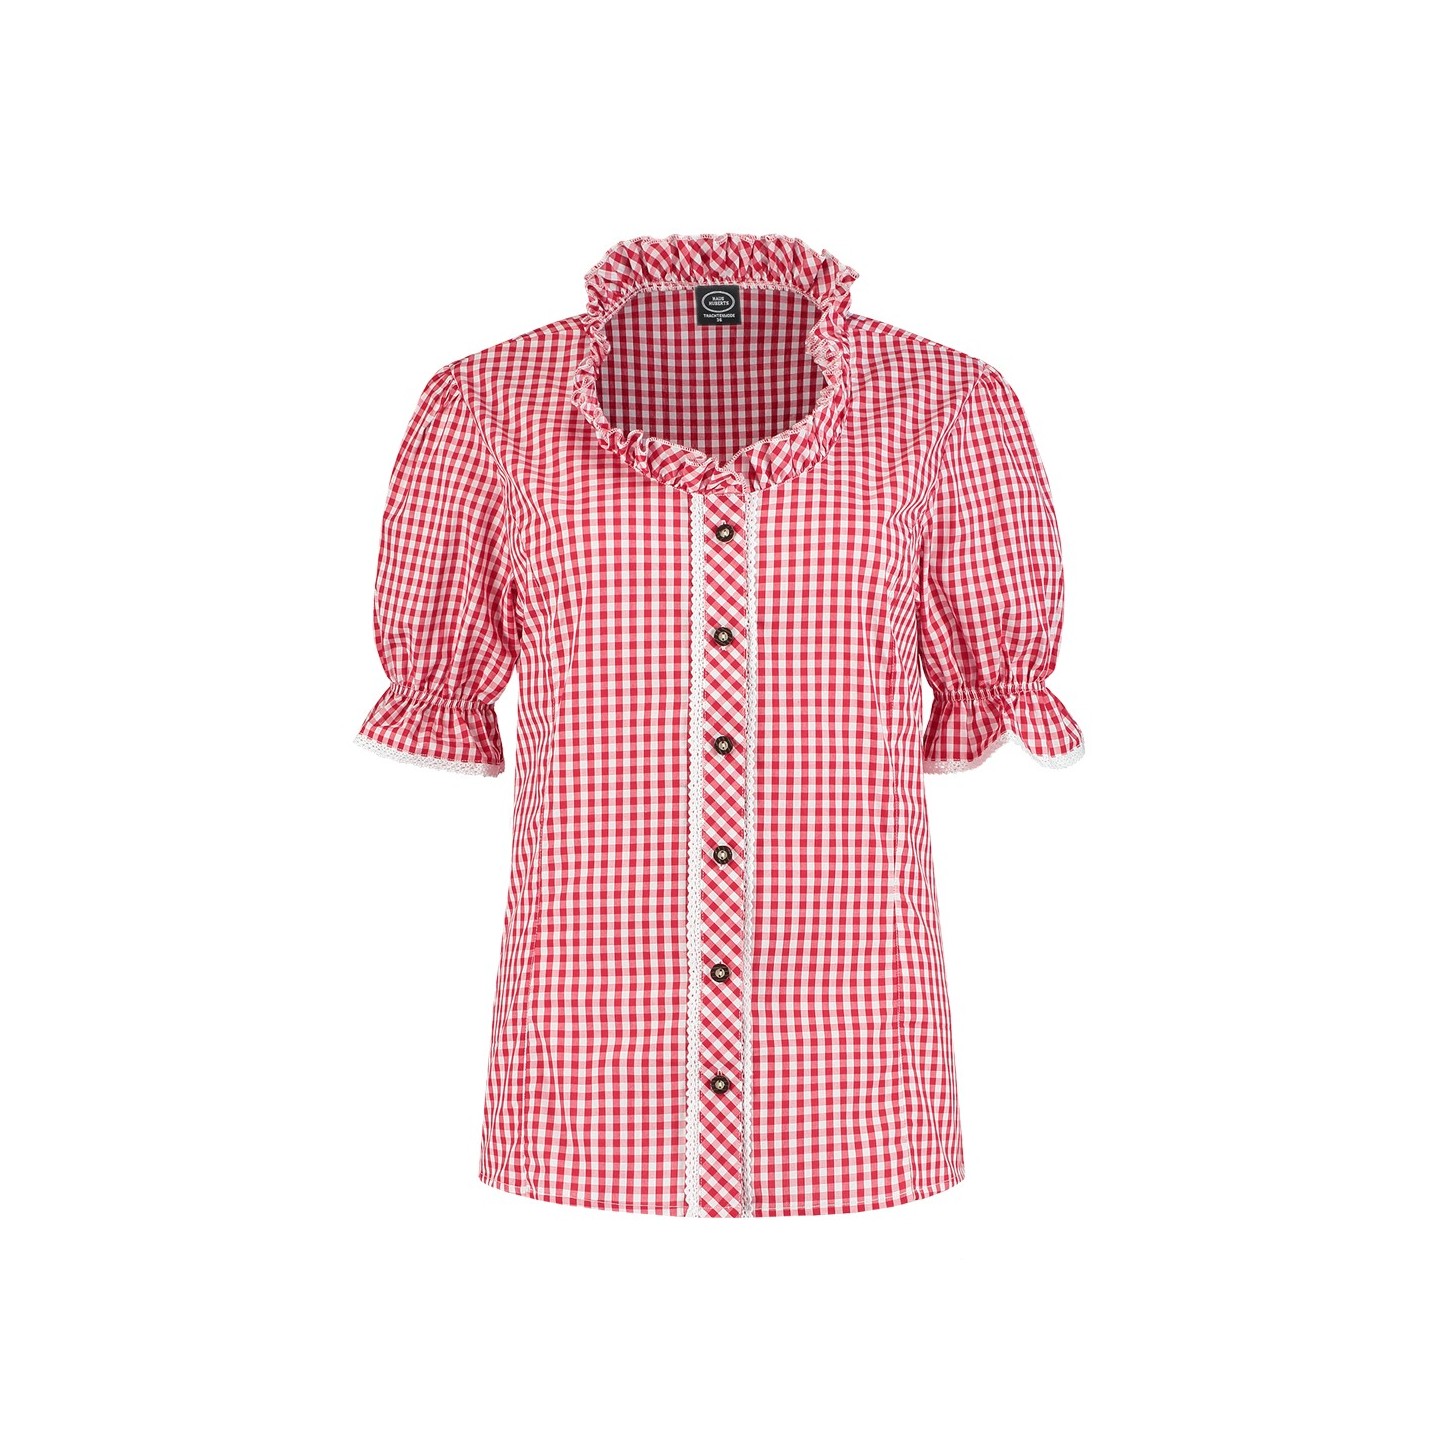 Trachten blouse dames tiroler shirt oktoberfest